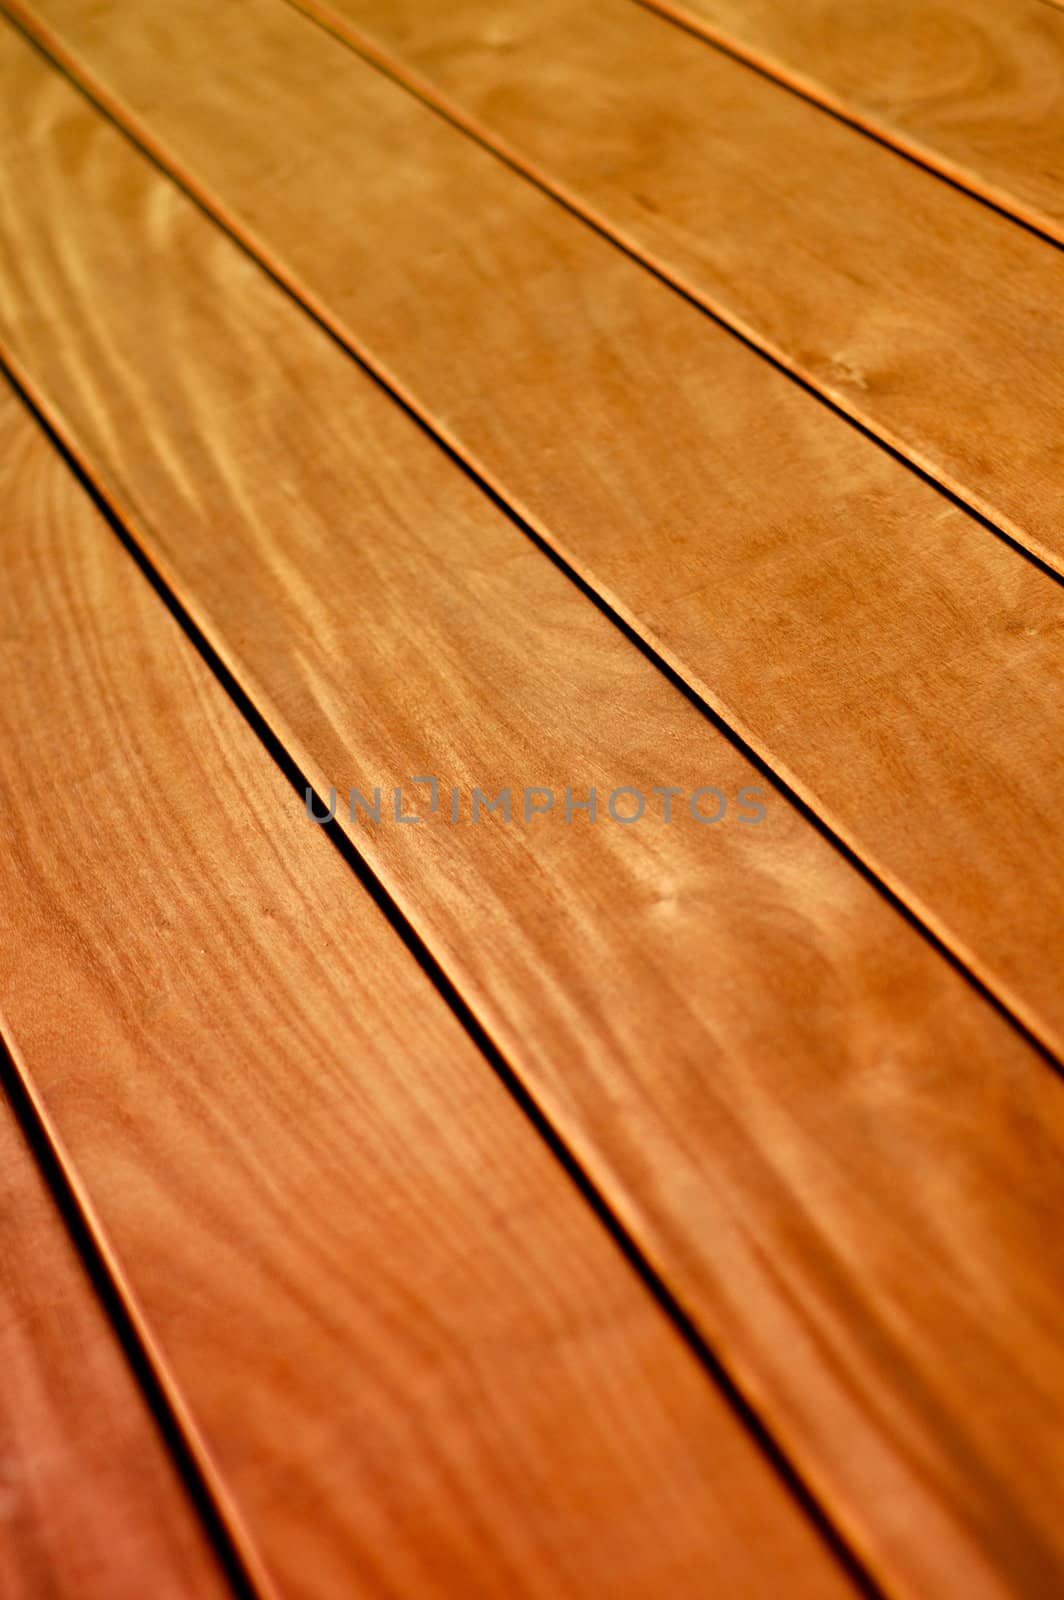 Wooden Floor by mrdoomits